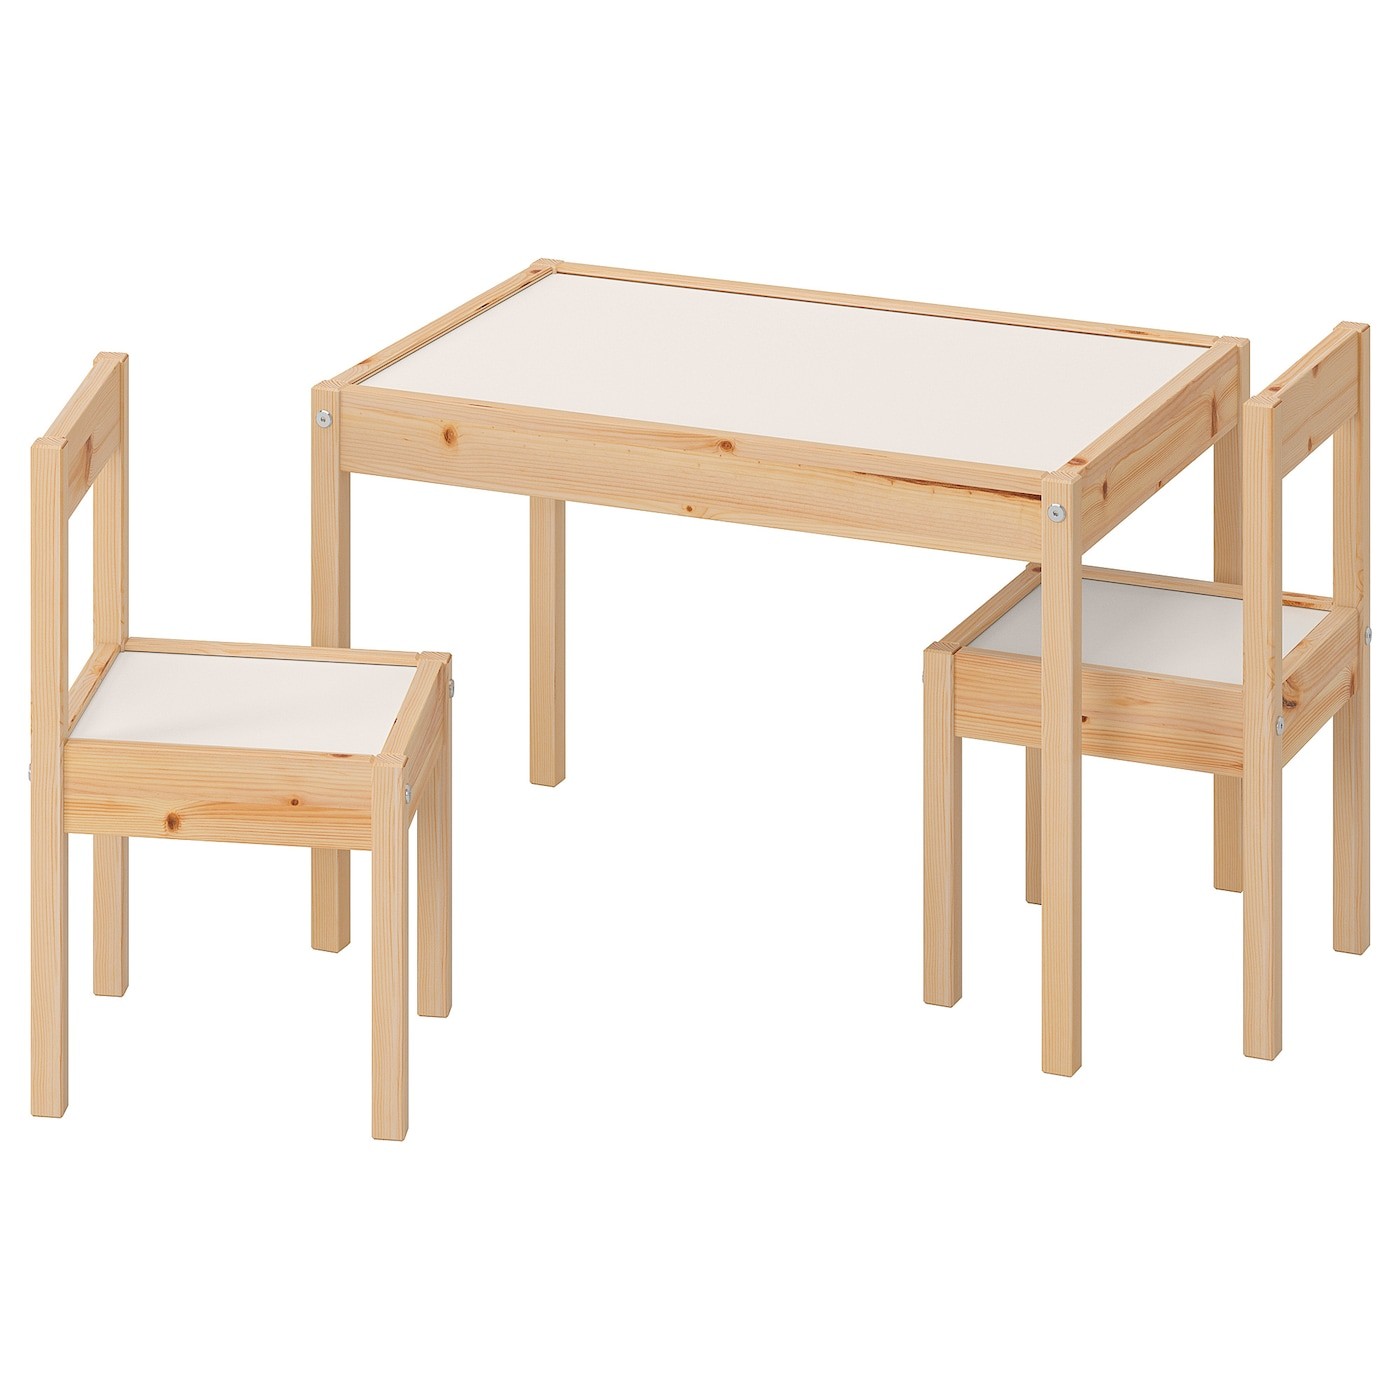 laett-tavolo-per-bambini-con-2-sedie-bianco-pino__0735856_pe740220_s5